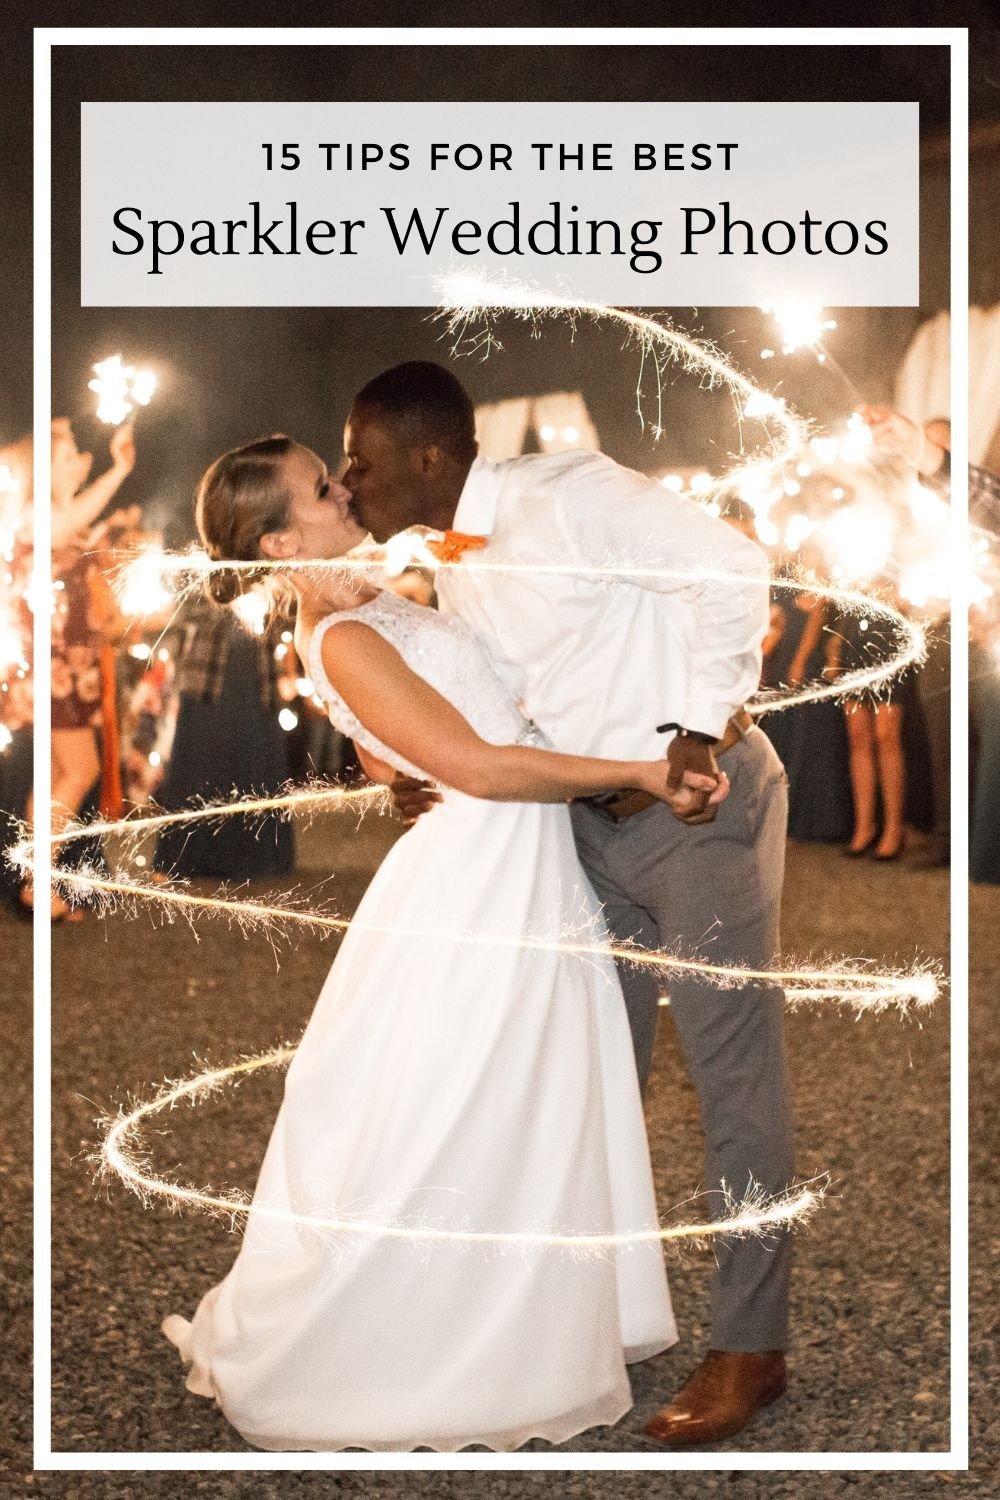 sparkler wedding tips.jpg